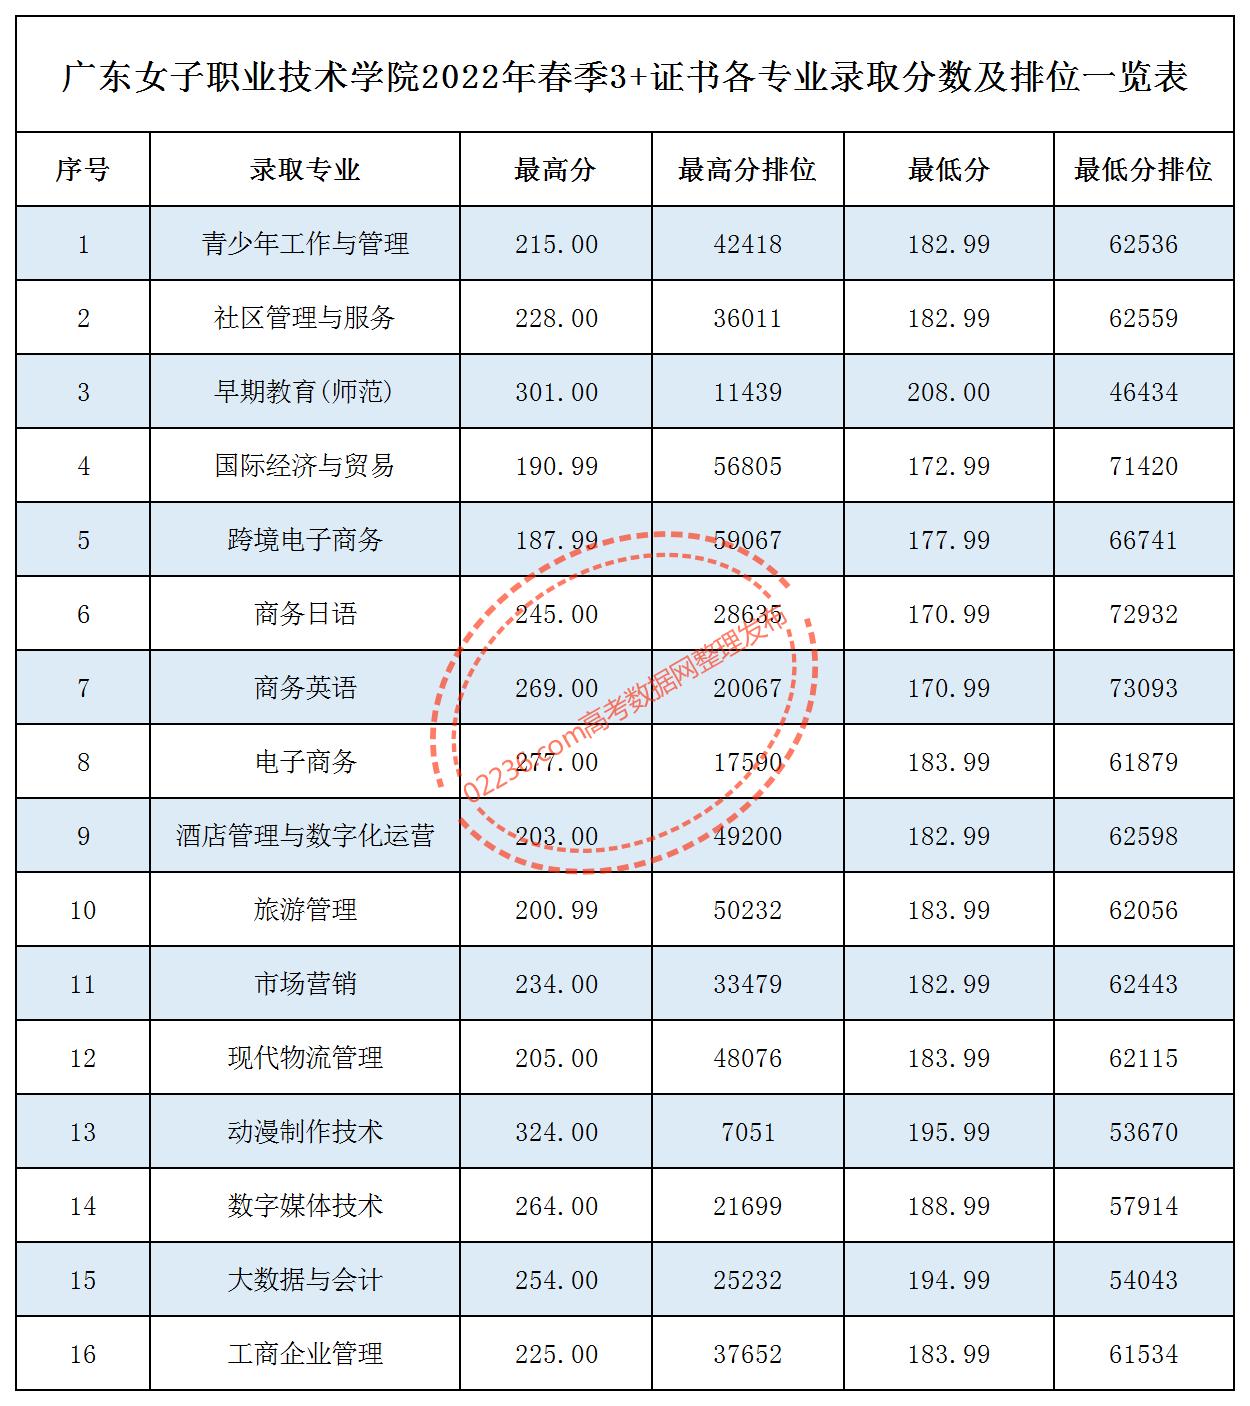 广东女子职业技术学院2022年春季3+证书各专业录取分数及排位一览表.jpg